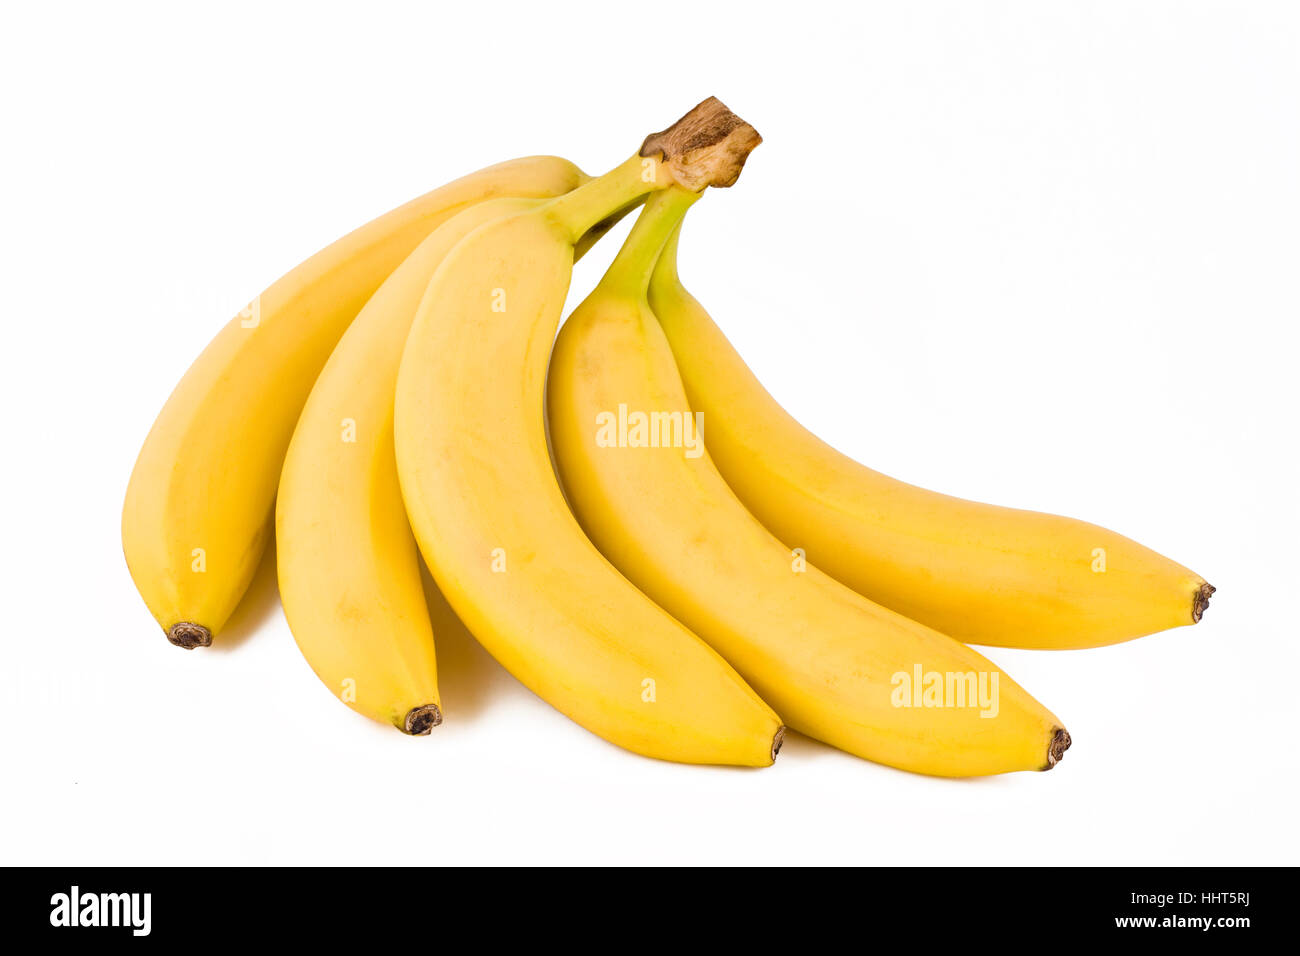 food, aliment, five, fruit, banana, yellow, food, aliment, object, macro  Stock Photo - Alamy